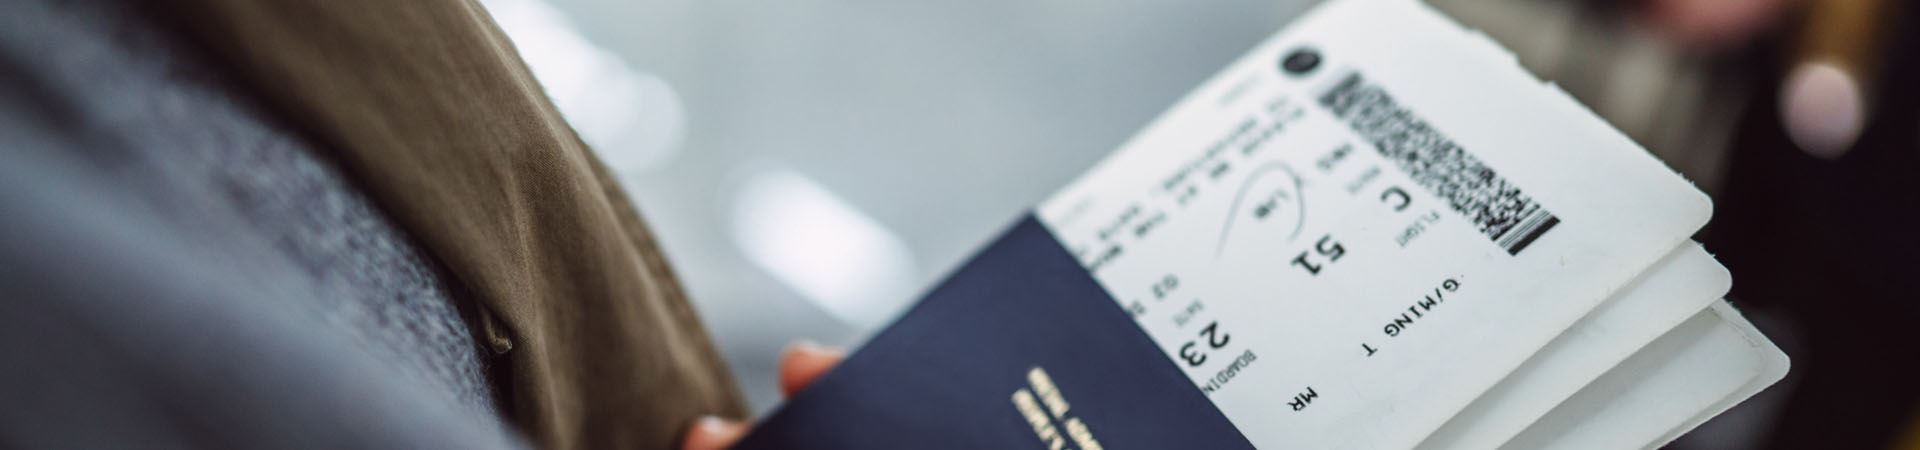 Фотография крупным планом руки, держащей три темно-синих паспорта. Внутри каждого паспорта находится посадочный талон.